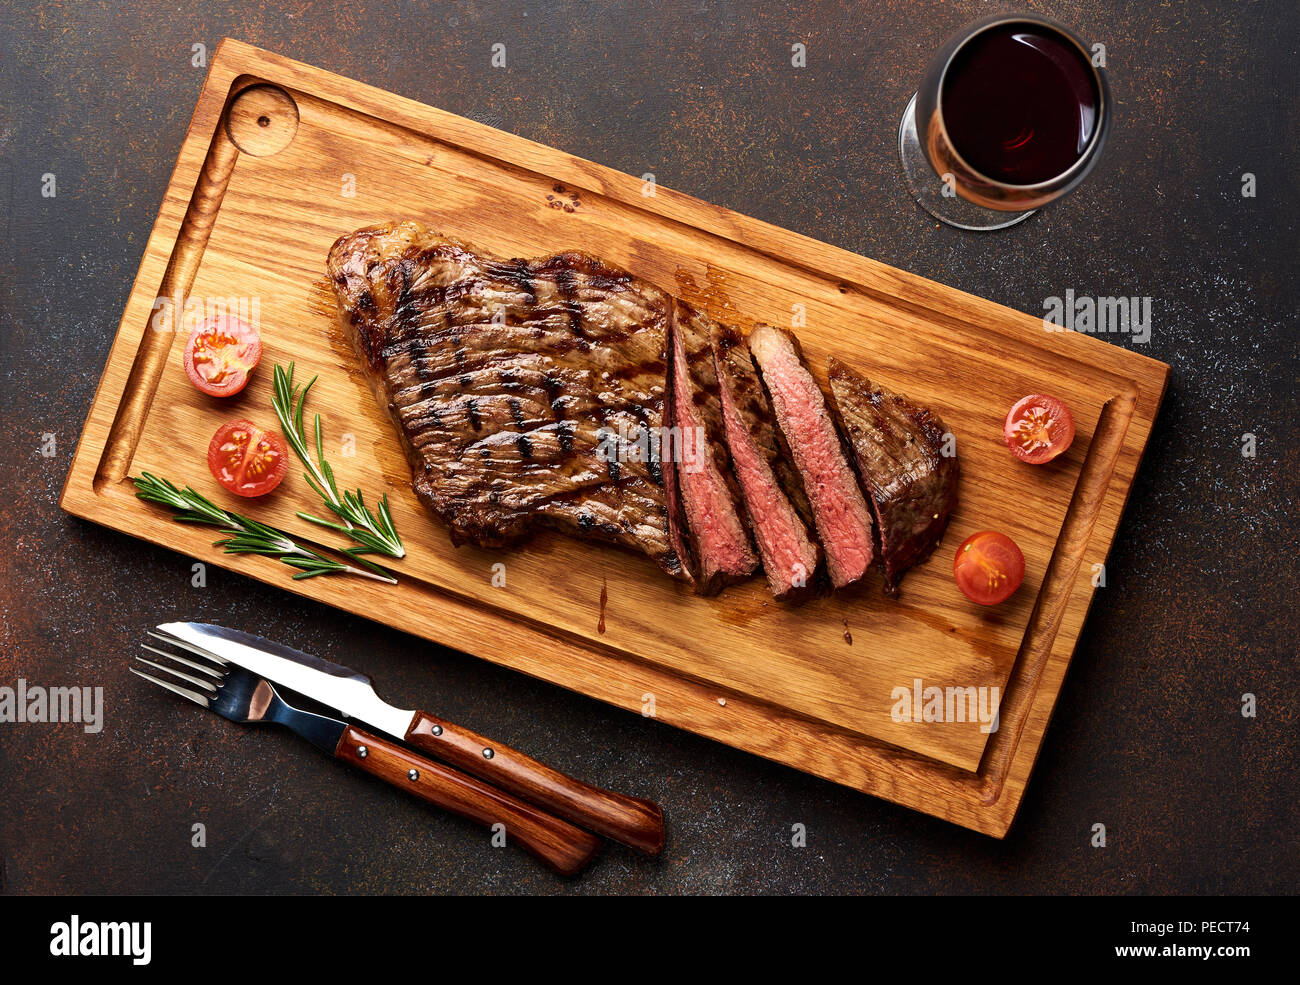 Black Angus Steak grillé et un verre de vin rouge avec les tomates, le romarin sur la planche à découper la viande. Banque D'Images